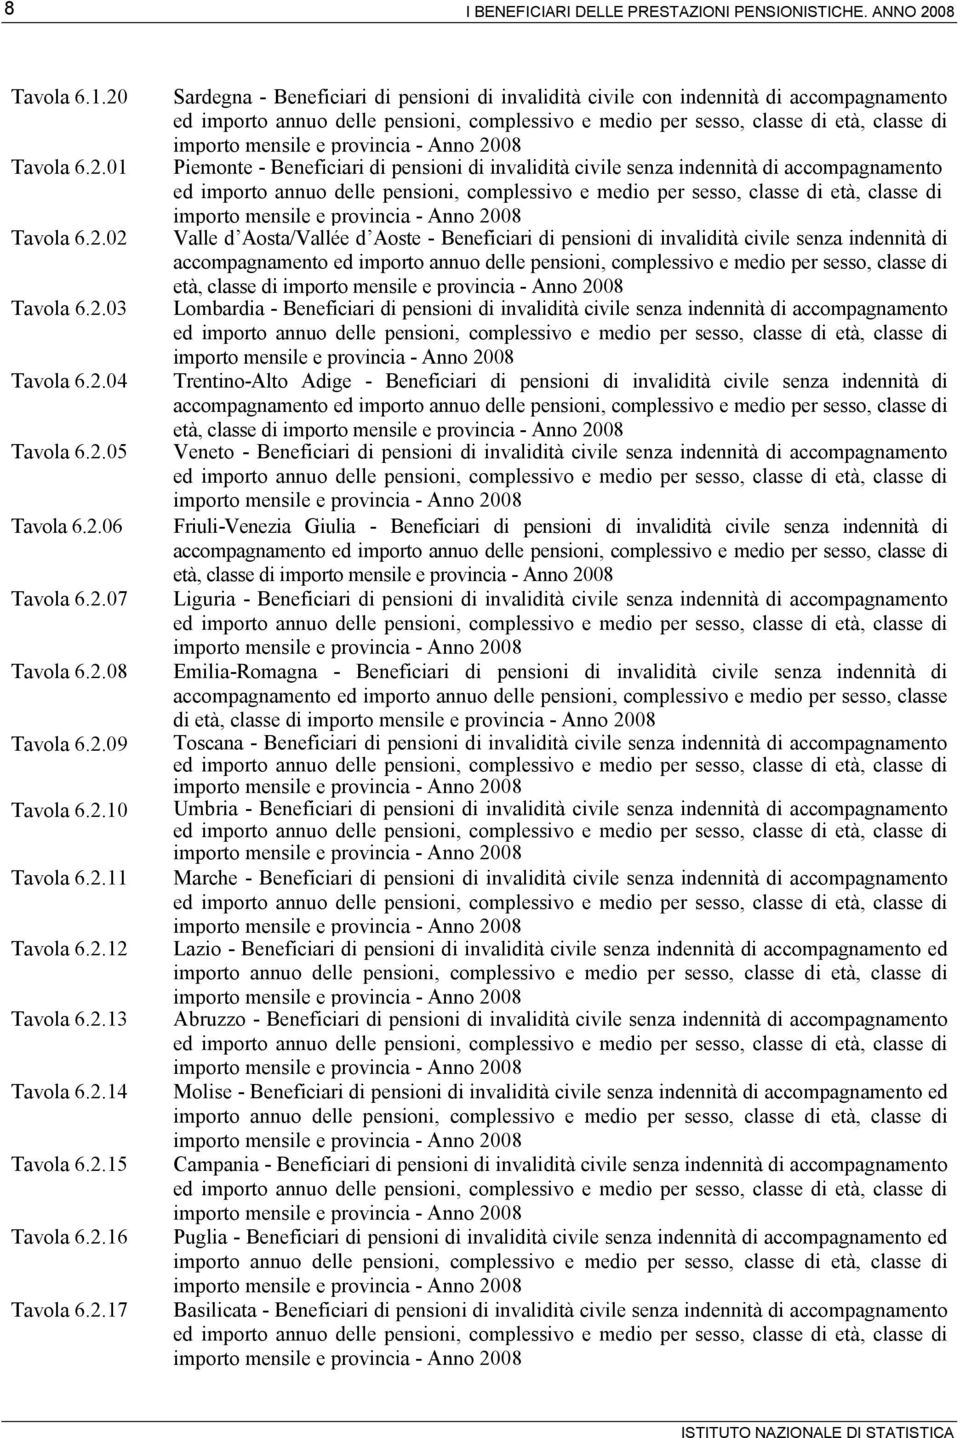 Piemonte - Beneficiari di pensioni di invalidità civile senza indennità di accompagnamento ed Valle d Aosta/Vallée d Aoste - Beneficiari di pensioni di invalidità civile senza indennità di